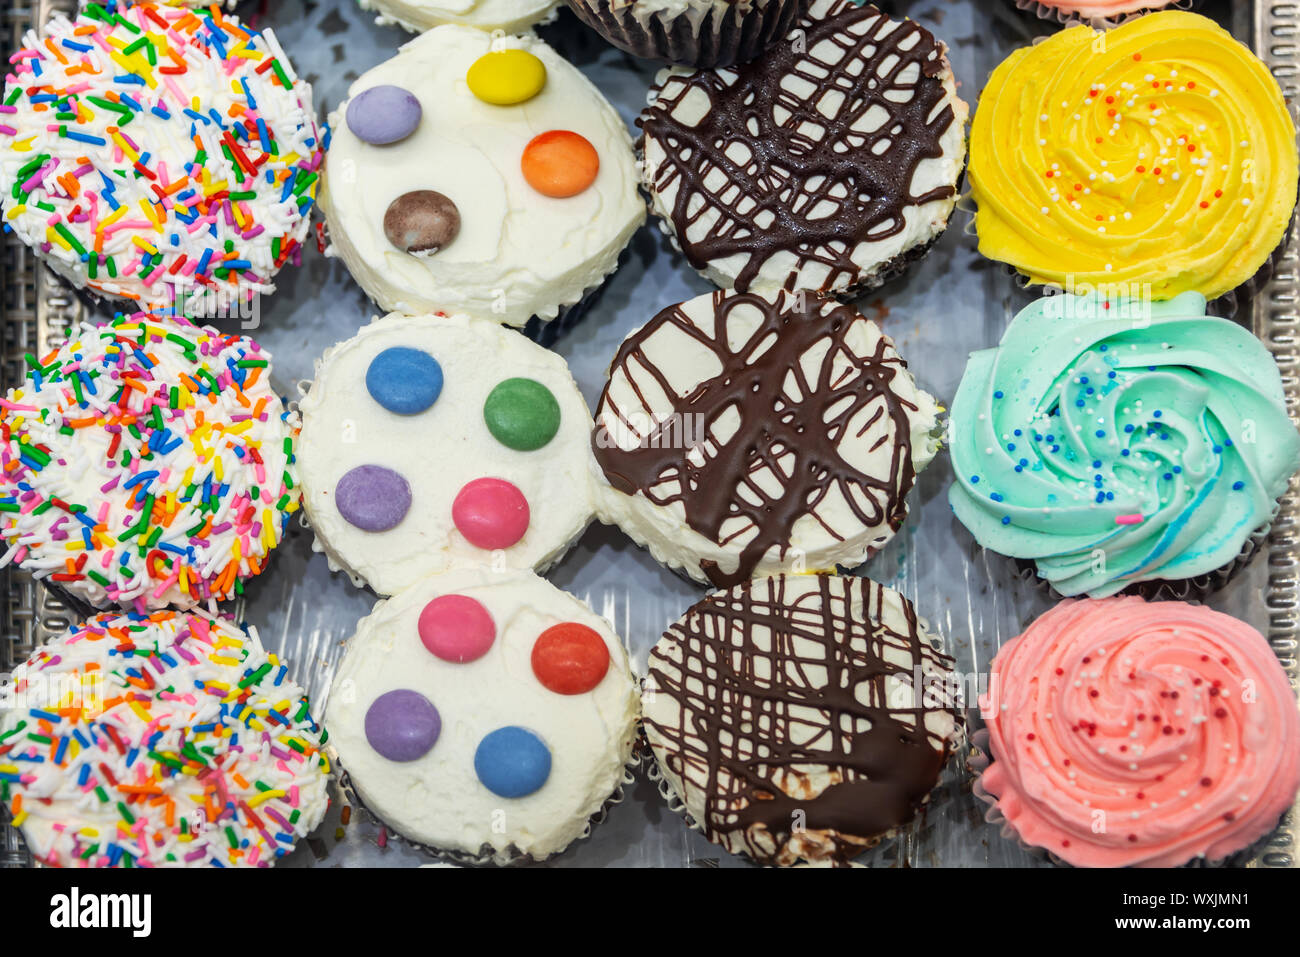 Vue de dessus de cupcakes colorés Banque D'Images